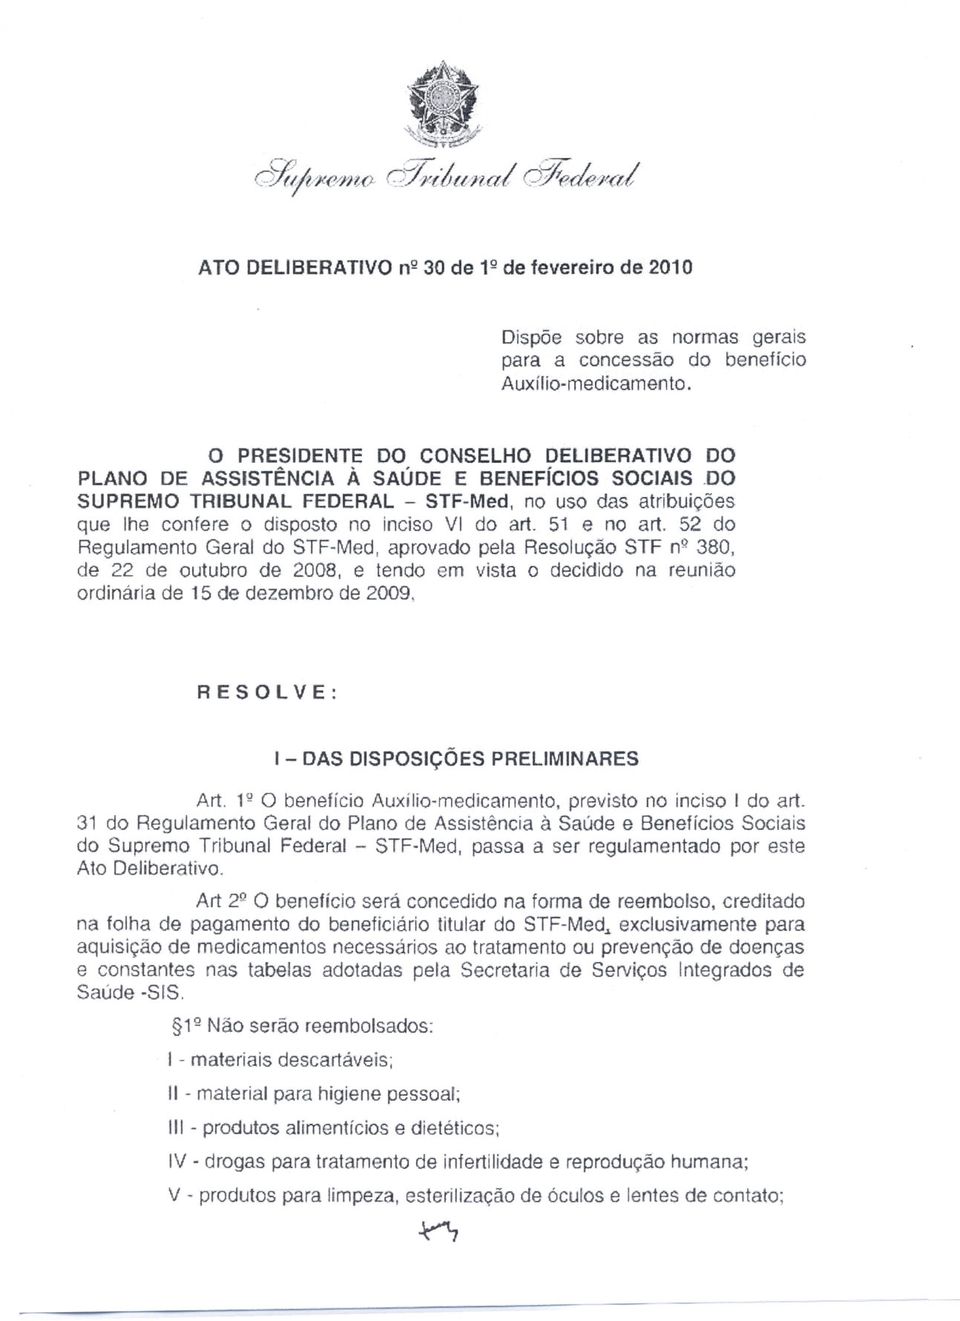 51 e no art. 52 do Regulamento Geral do STF-Med, aprovado pela Resolução STF nq380, de 22 de outubro de 2008, e tendo em vista o decidido na reunião ordinária de 15 de dezembro de 2009.